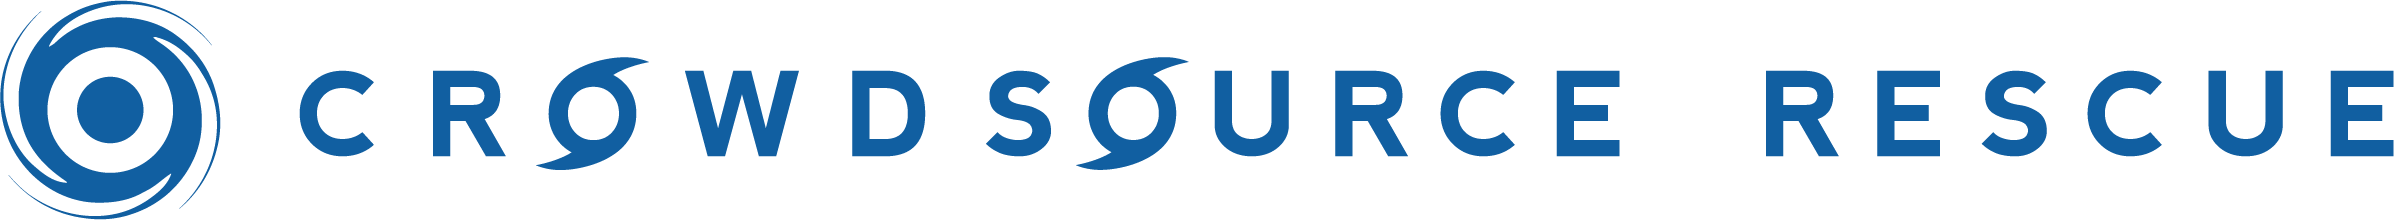 CrowdSource Rescue Blue Logo